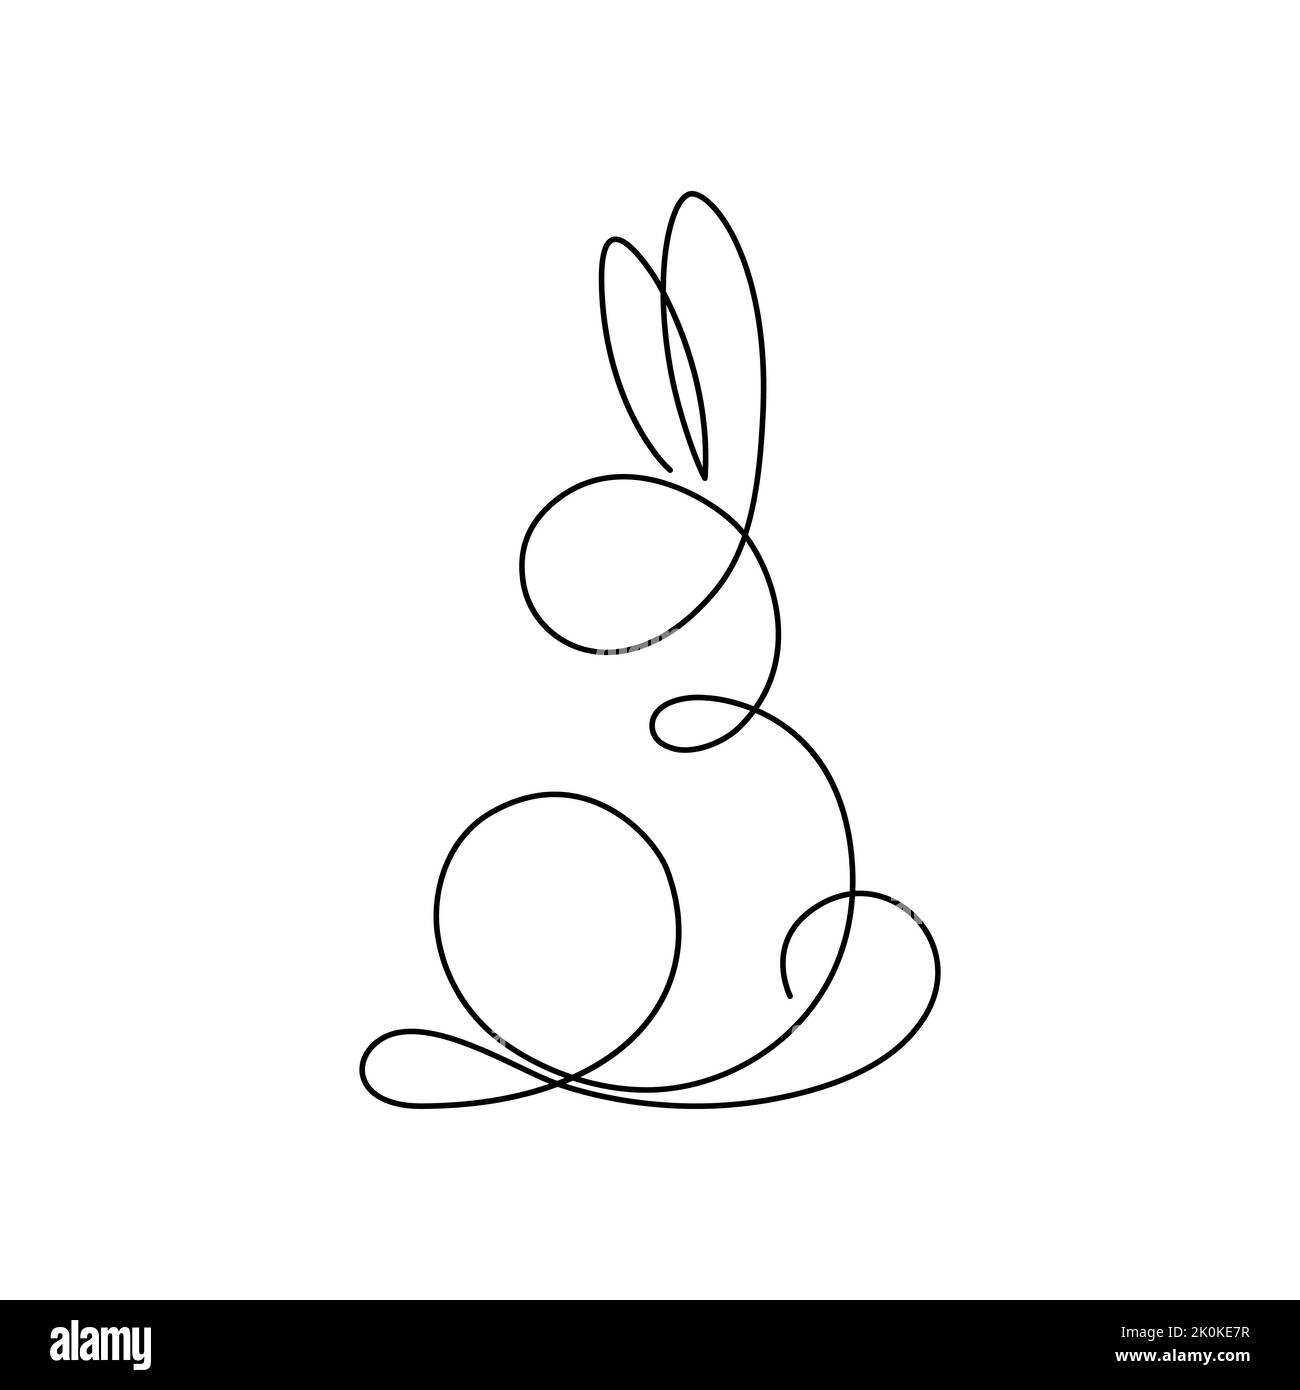 Dessin continu d'une ligne d'un lapin sur fond blanc. Symbole de la nouvelle année 2023 Illustration de Vecteur